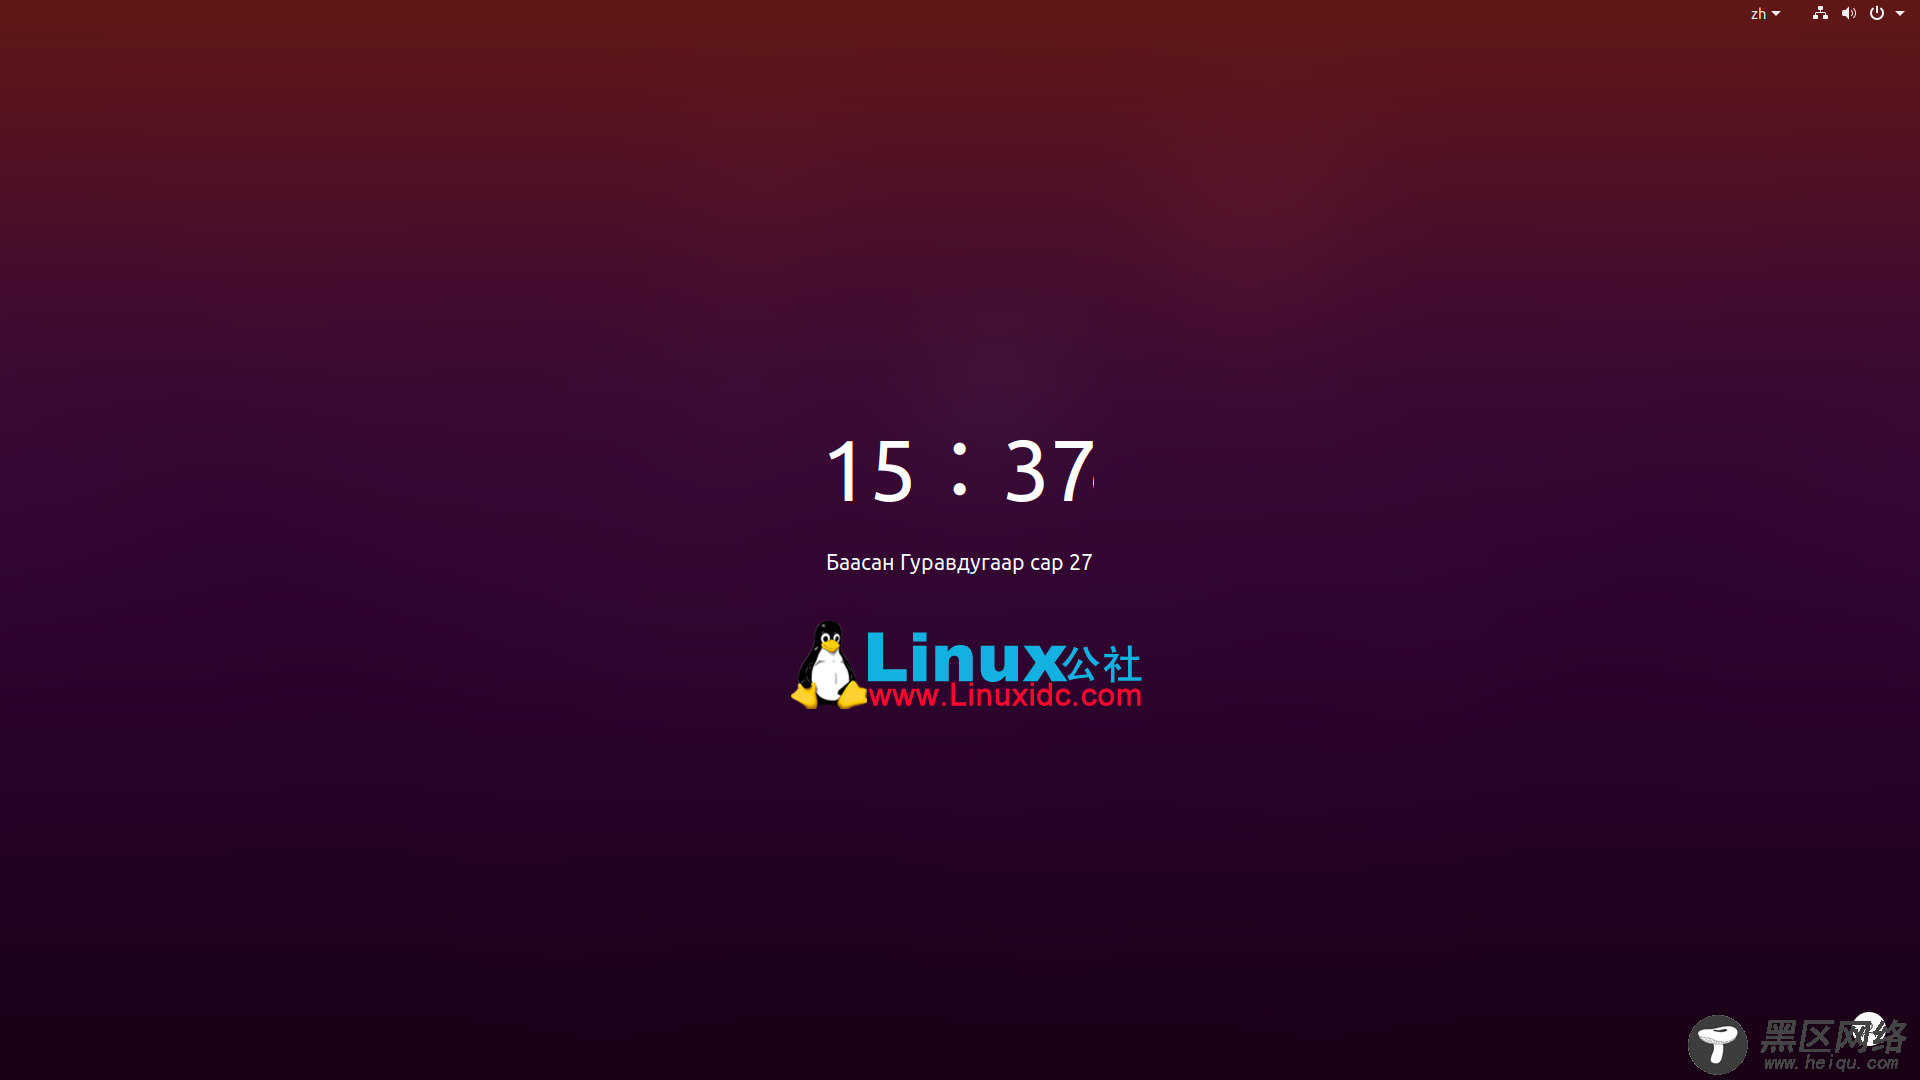 关于 Ubuntu 20.04 LTS Focal Fossa，我所知道的一切